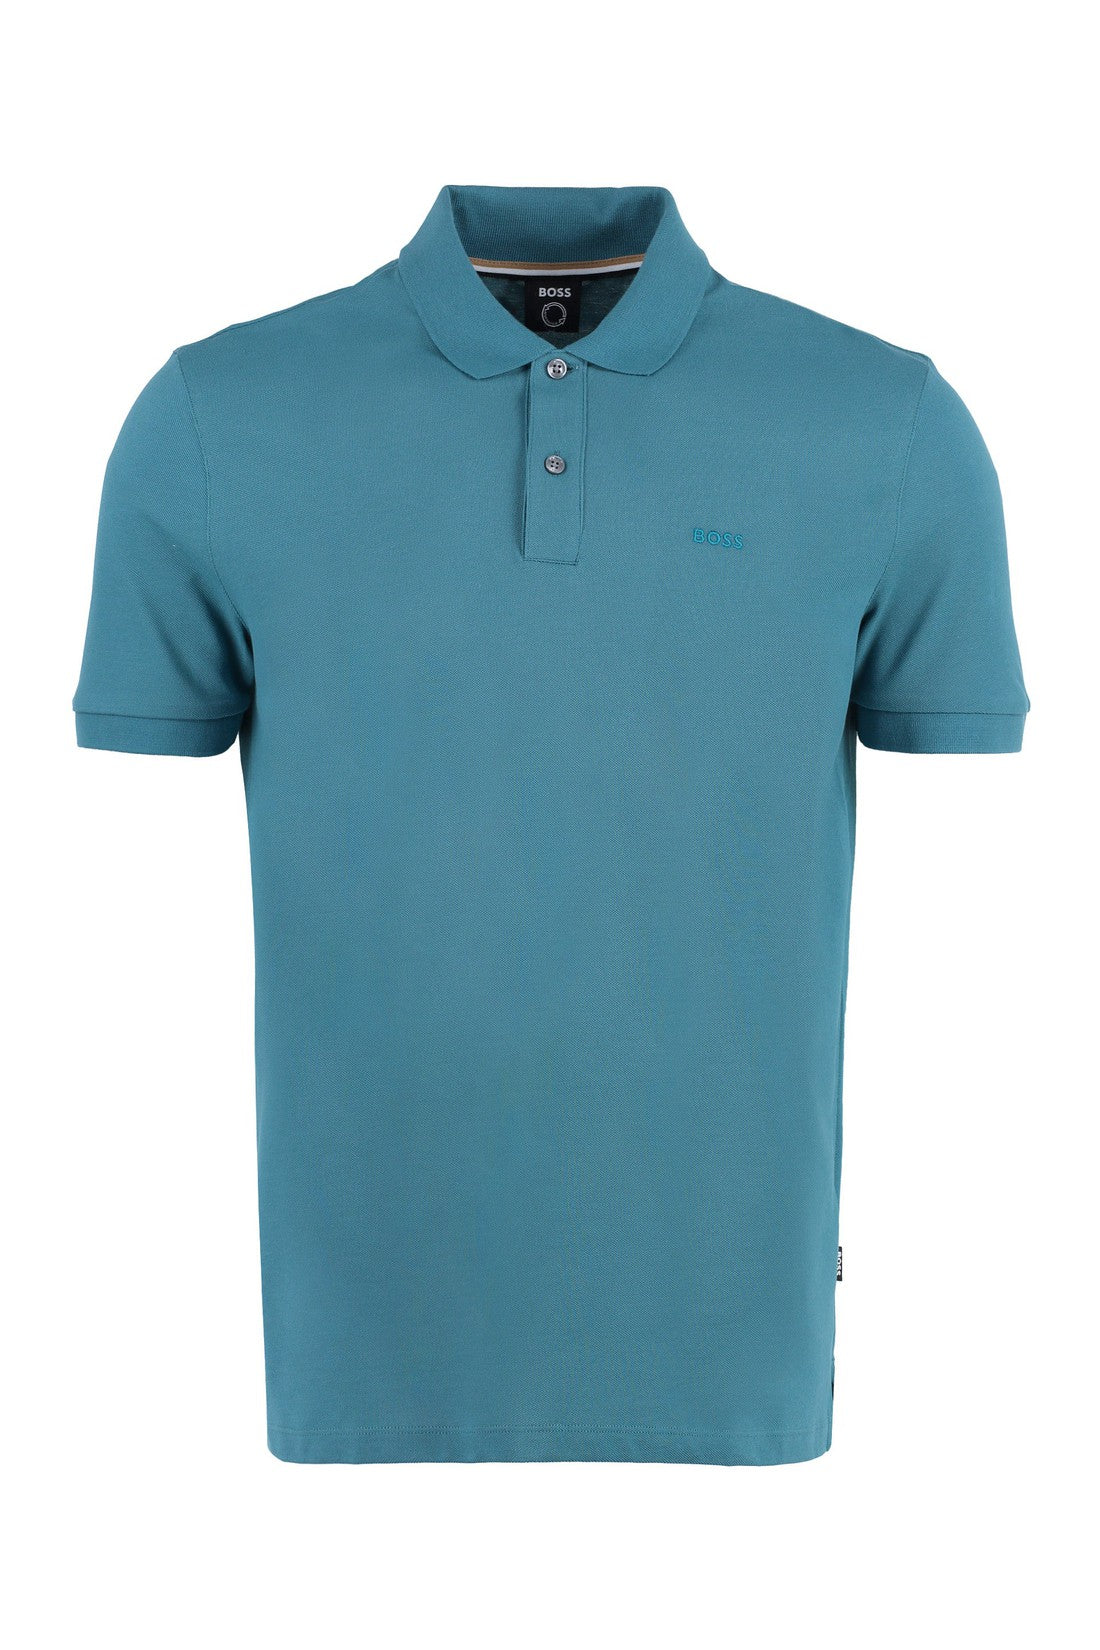 BOSS-OUTLET-SALE-Pallas short sleeve cotton polo shirt-ARCHIVIST